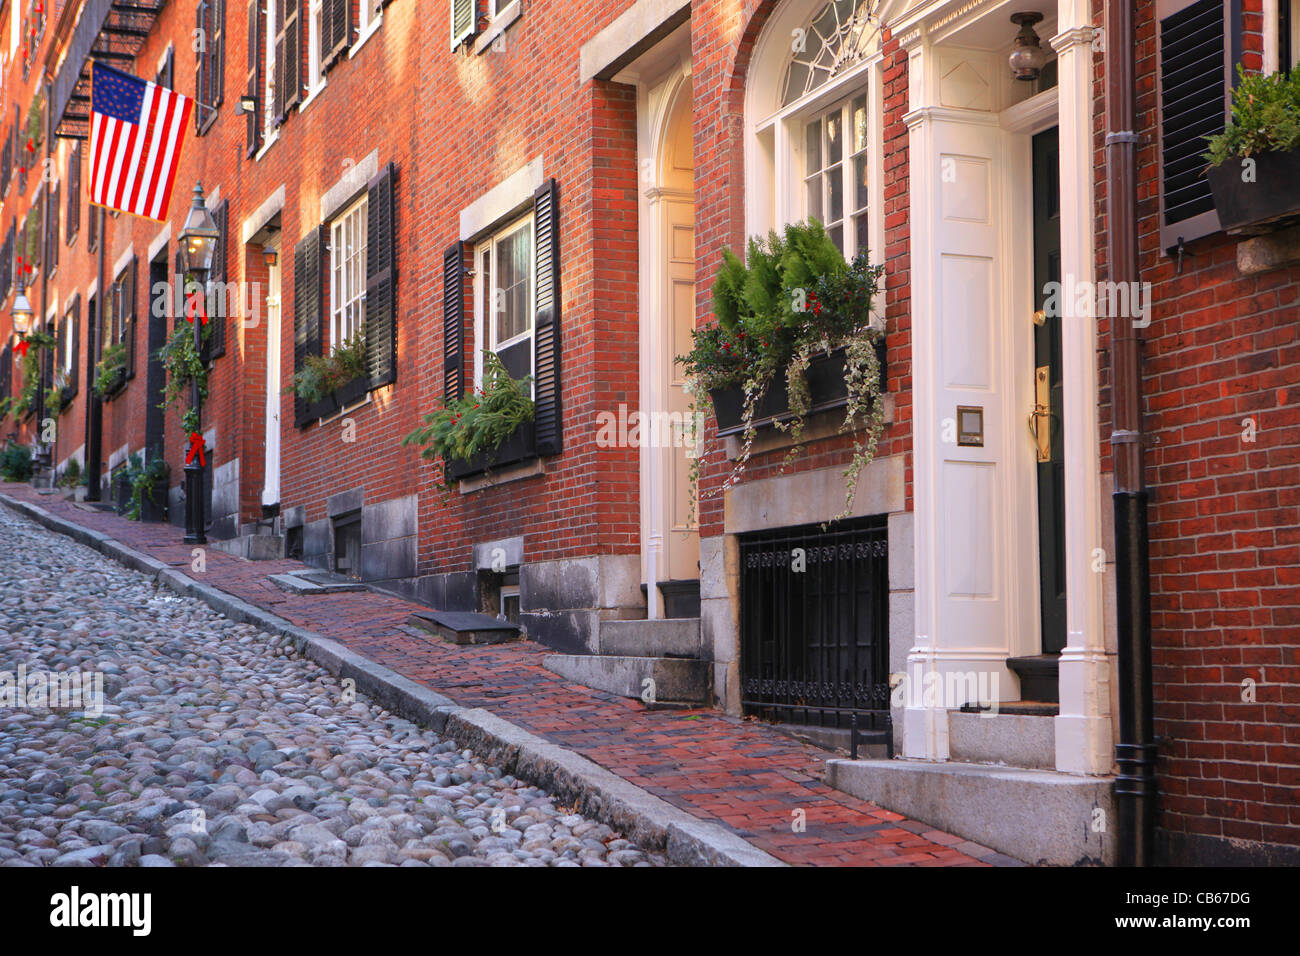 Beautiful historic Acorn Street in Beacon Hill, Boston, Massachusetts Stock Photo